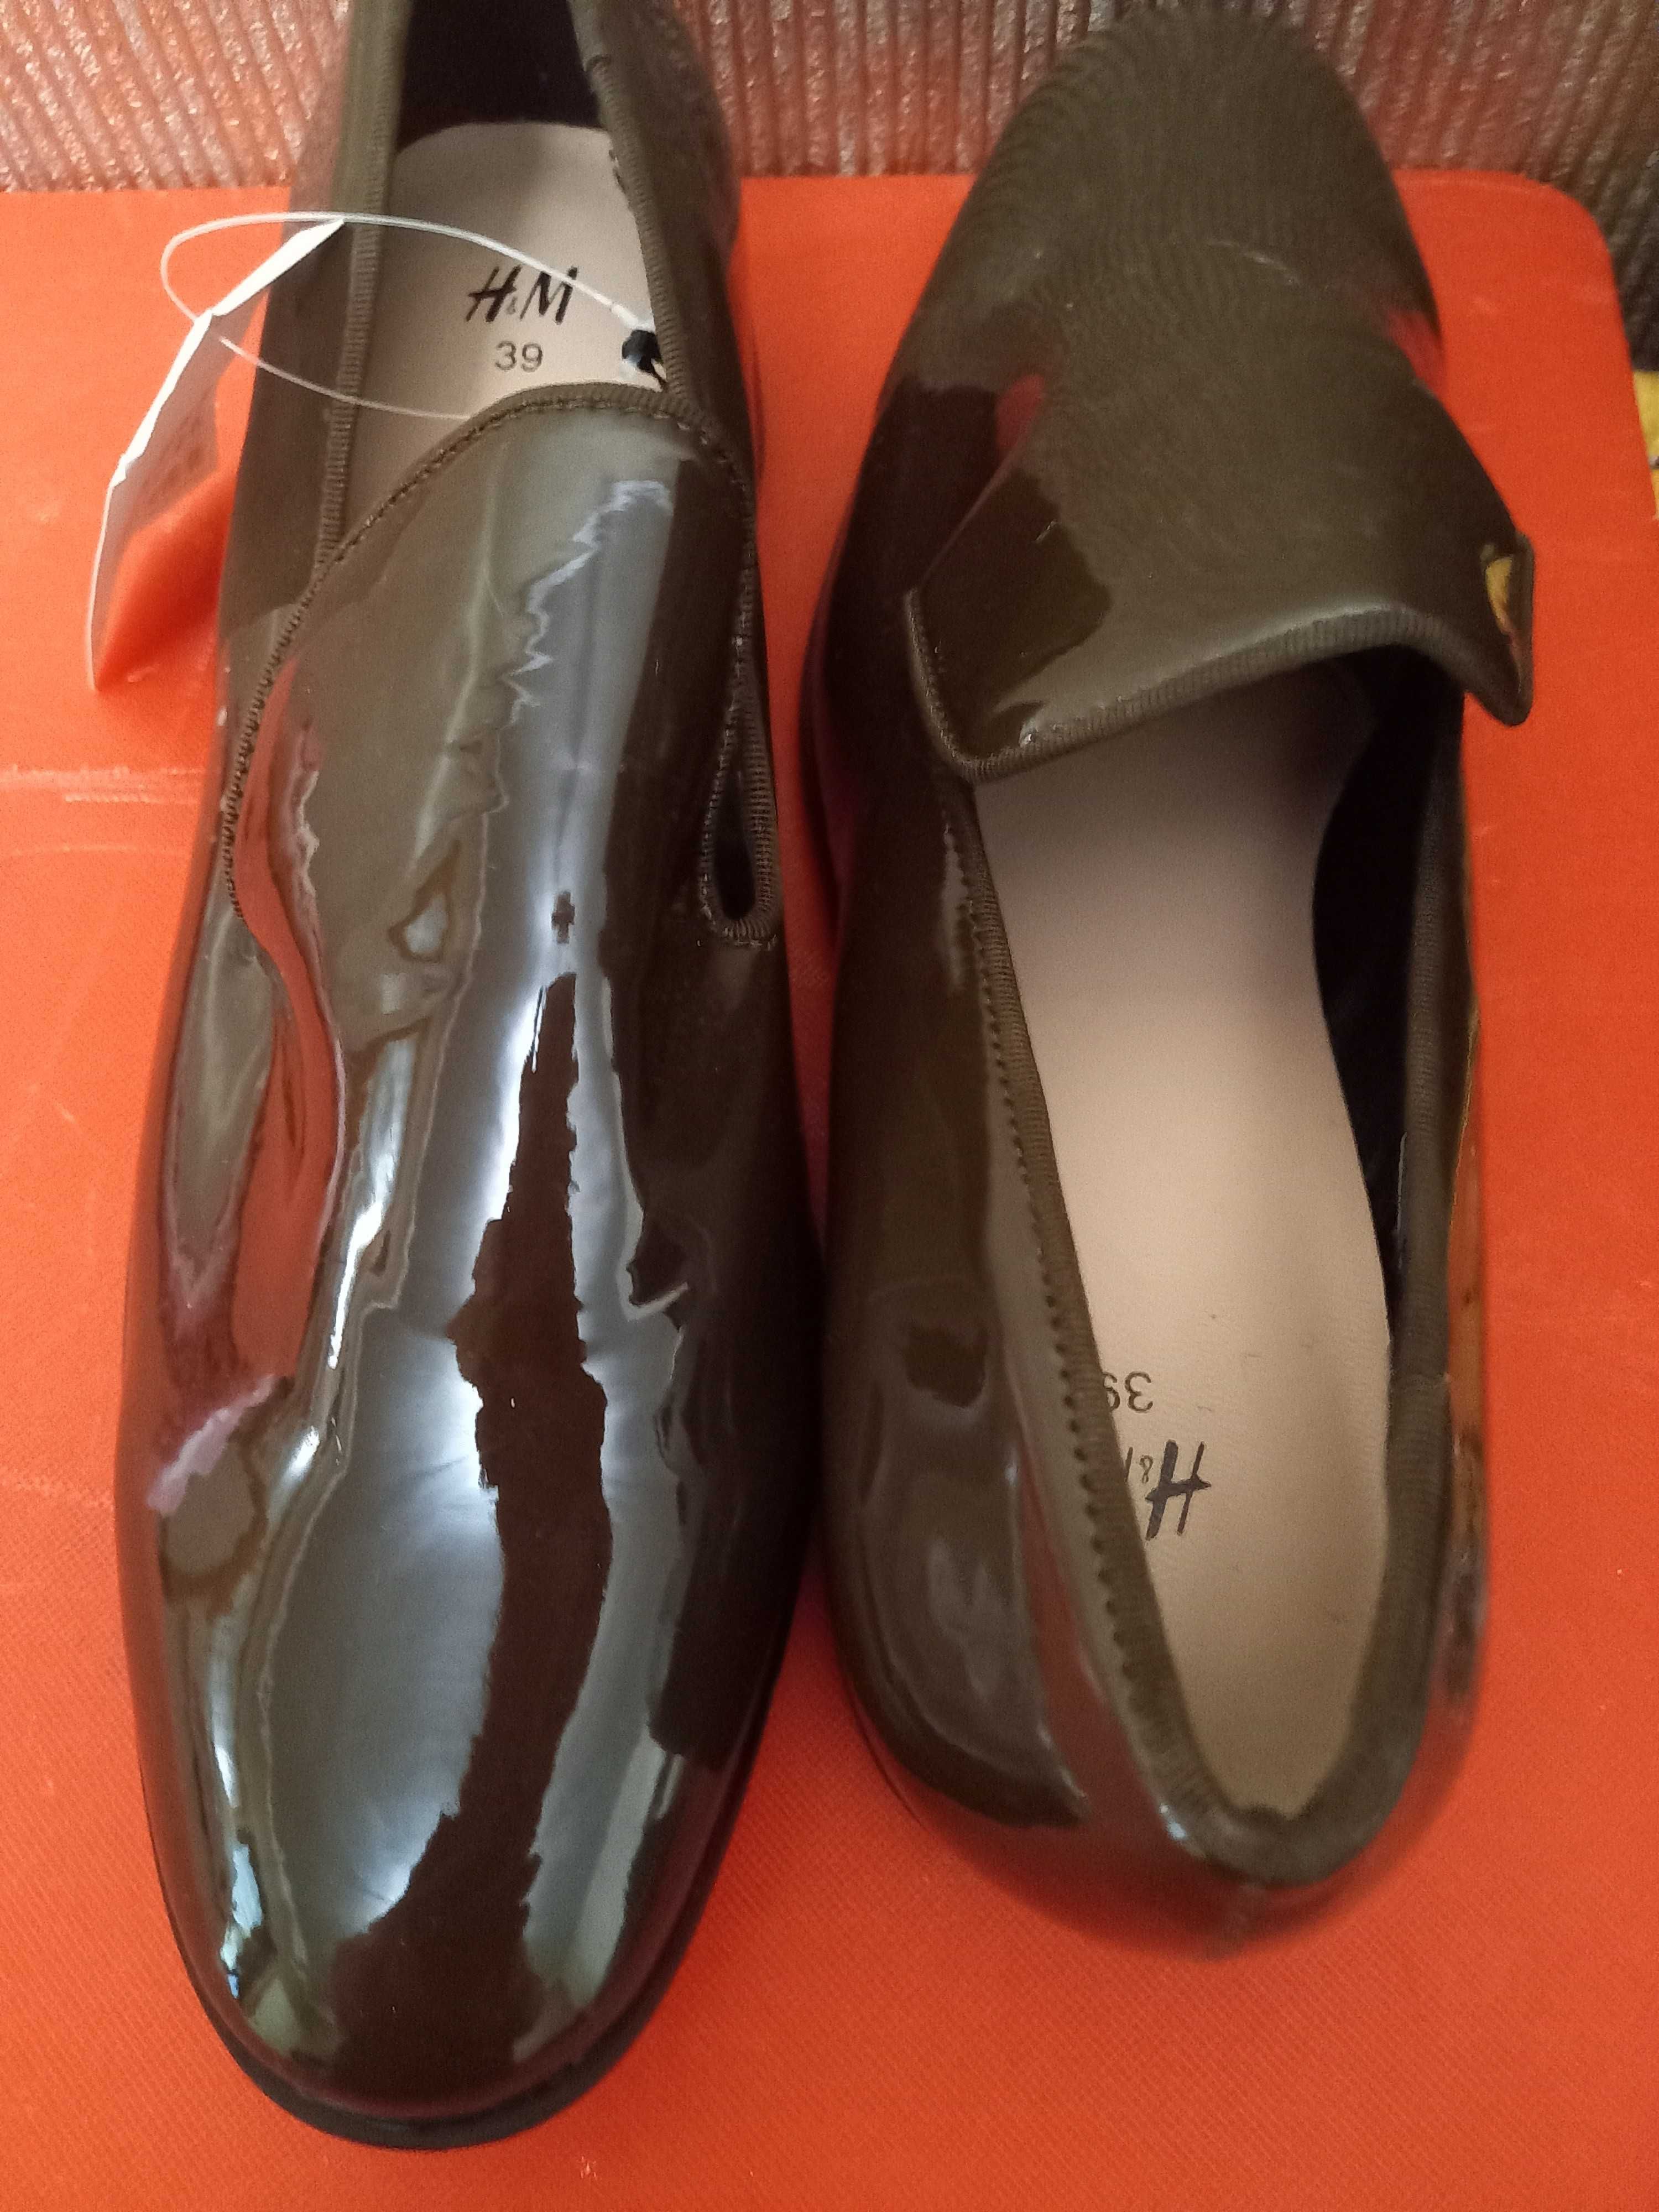 Новые туфли лоферы лак(кожа) размер 39 . Дания каталог Н и М